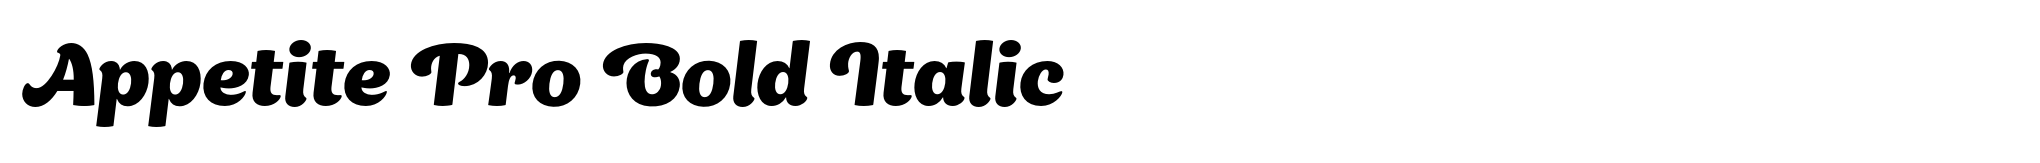 Appetite Pro Bold Italic image